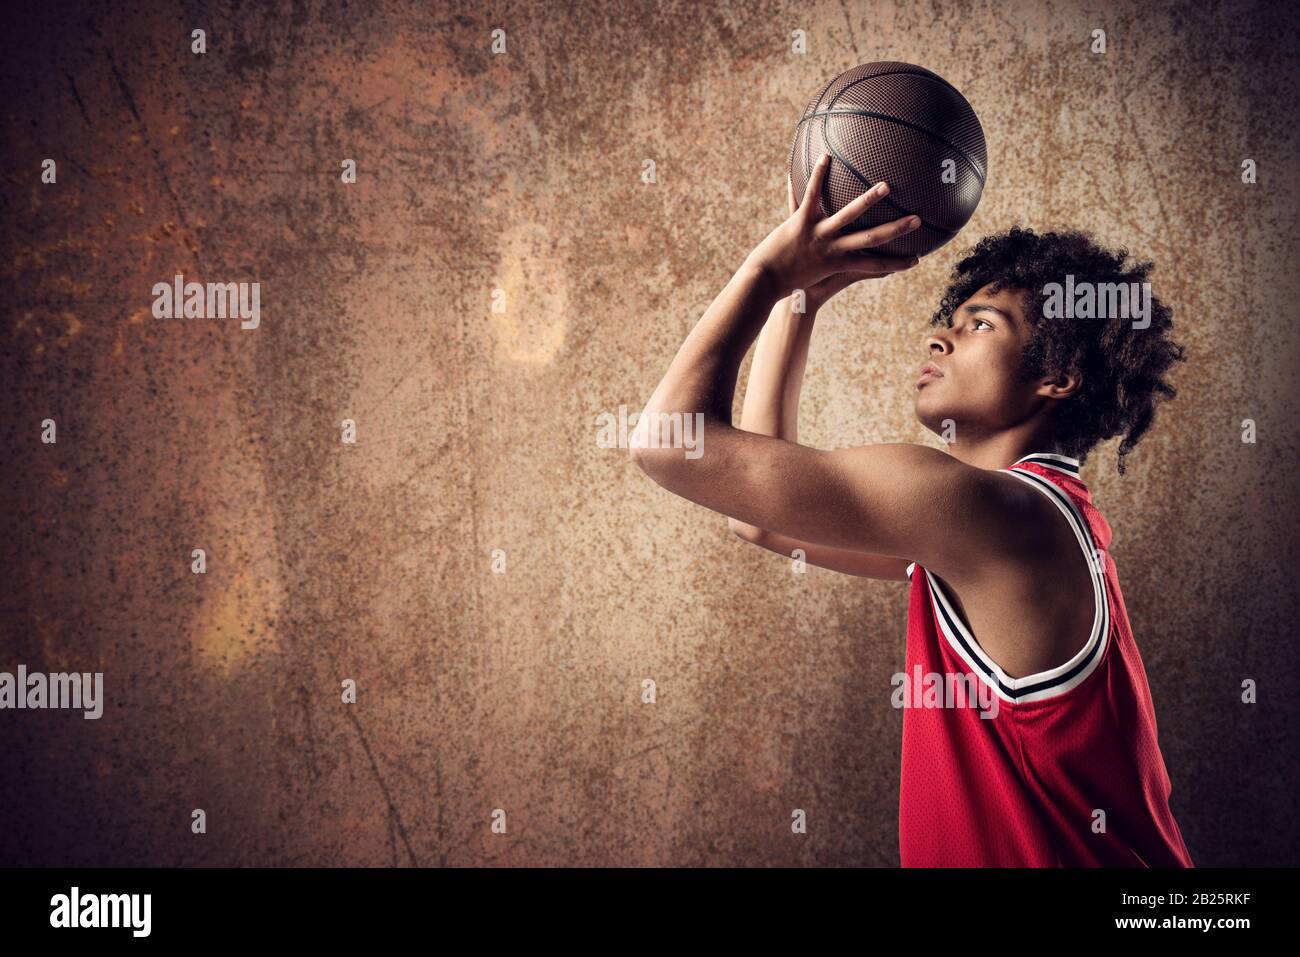 Le joueur de basket-ball jette le ballon sur fond brun grunge Banque D'Images